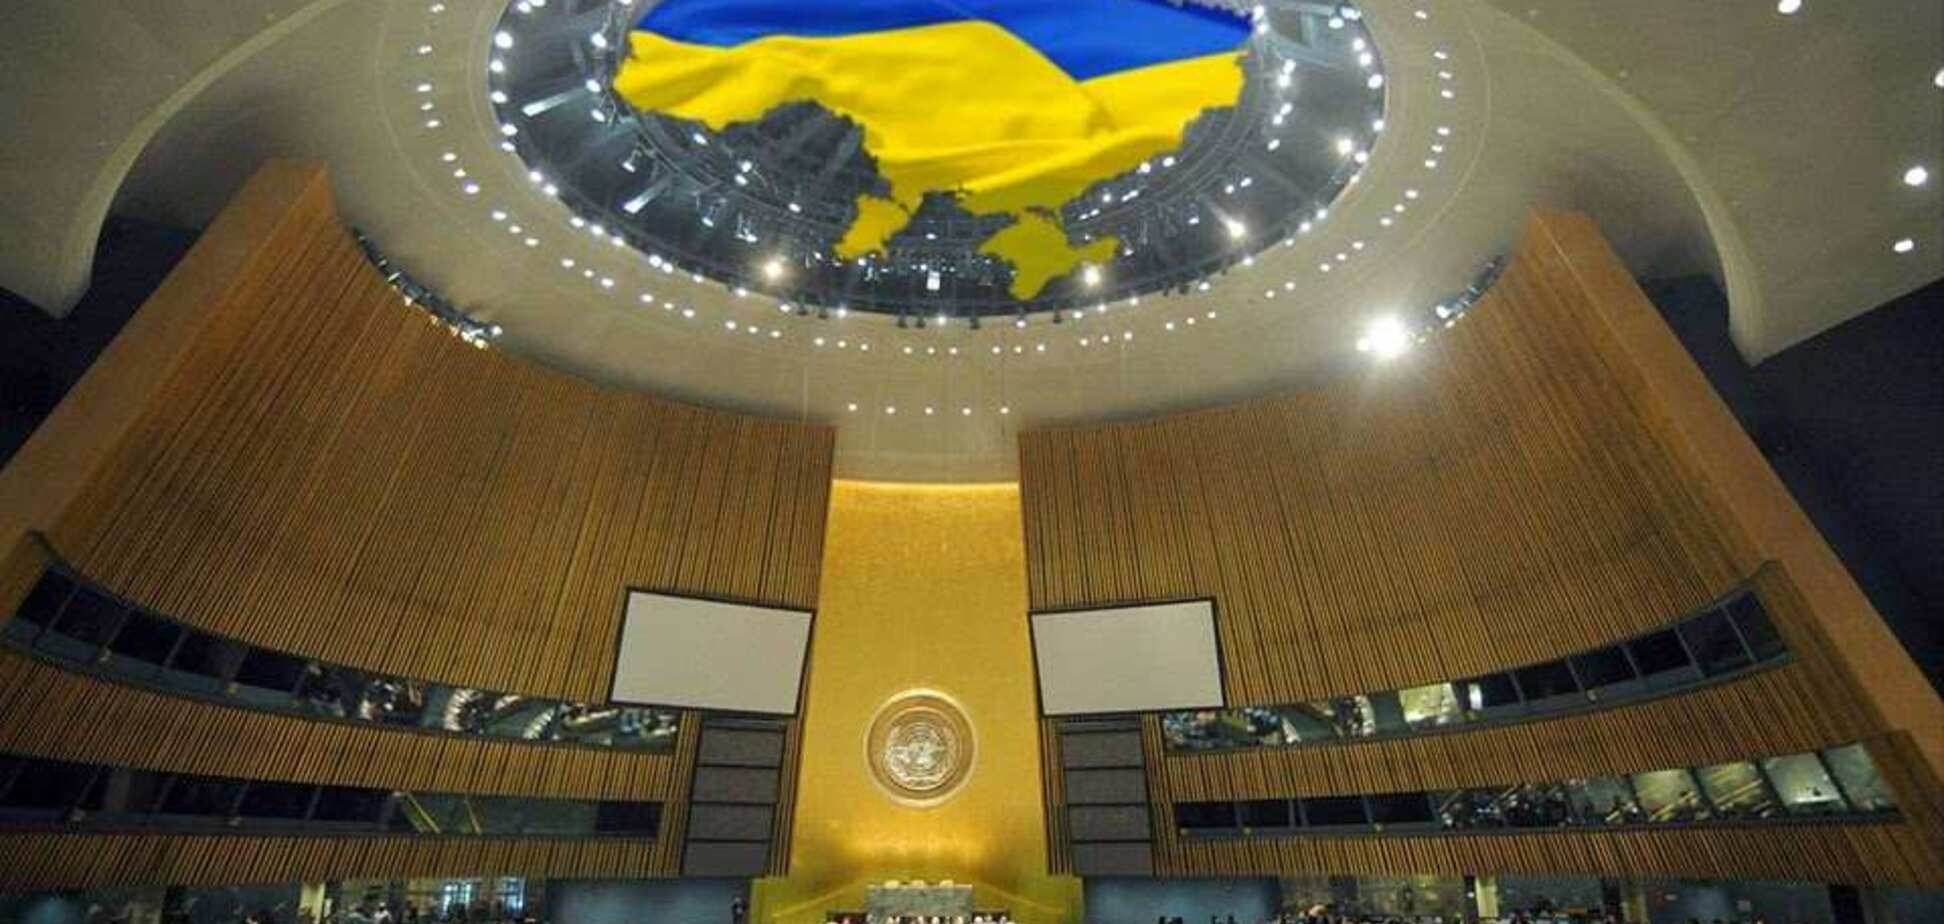 'Заплатите сповна!' Україна зробила потужне попередження Росії в ООН